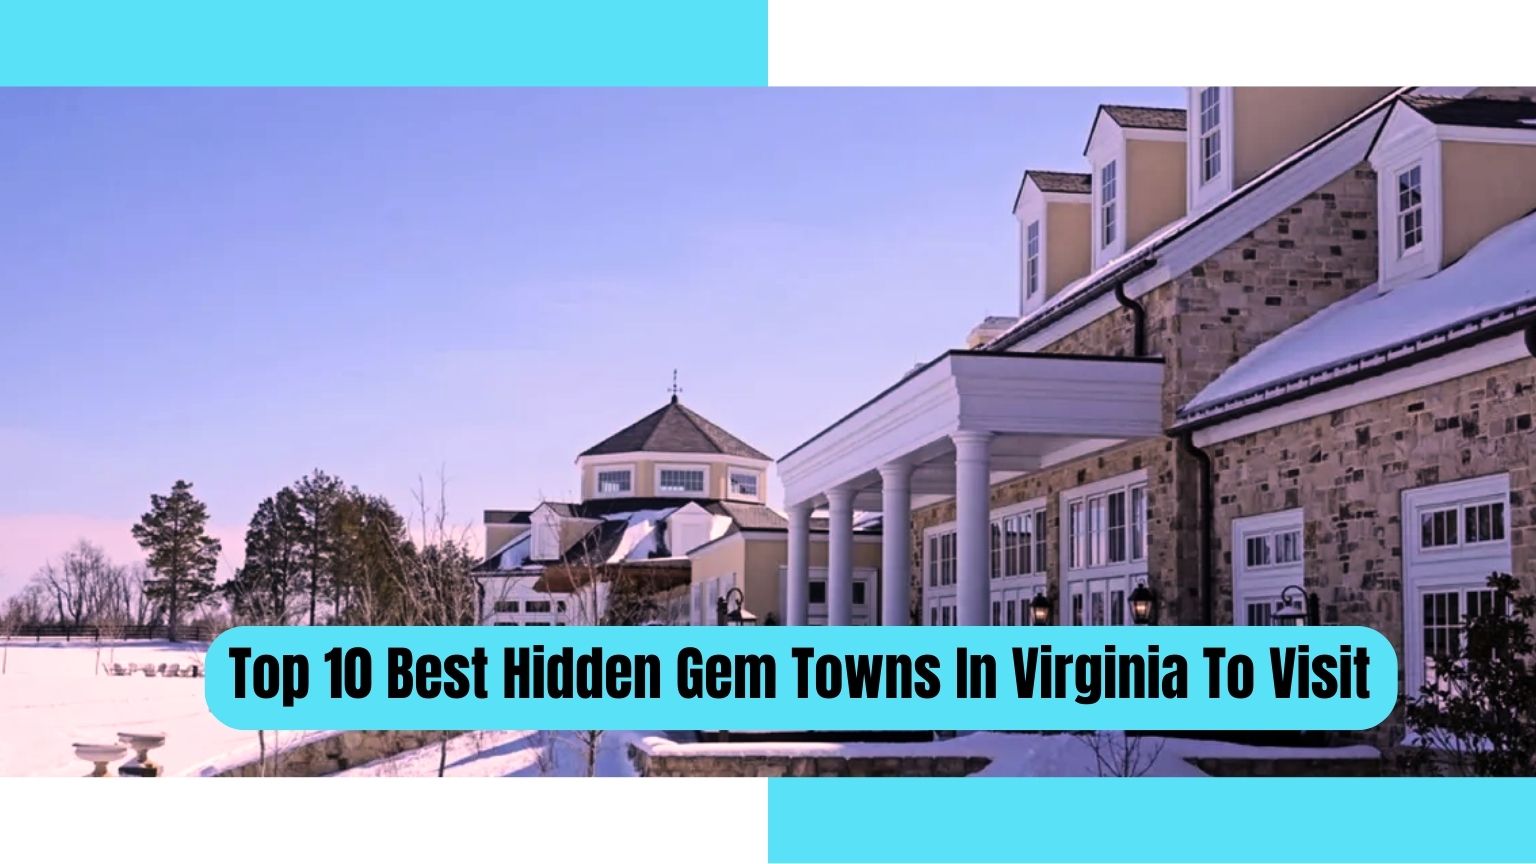 Hidden Gem Towns in Virginia, Hidden gem towns in virginia to visit, Hidden gem towns in virginia to live, Best hidden gem towns in virginia, Top 10 Best Hidden Gem Towns In Virginia To Visit,